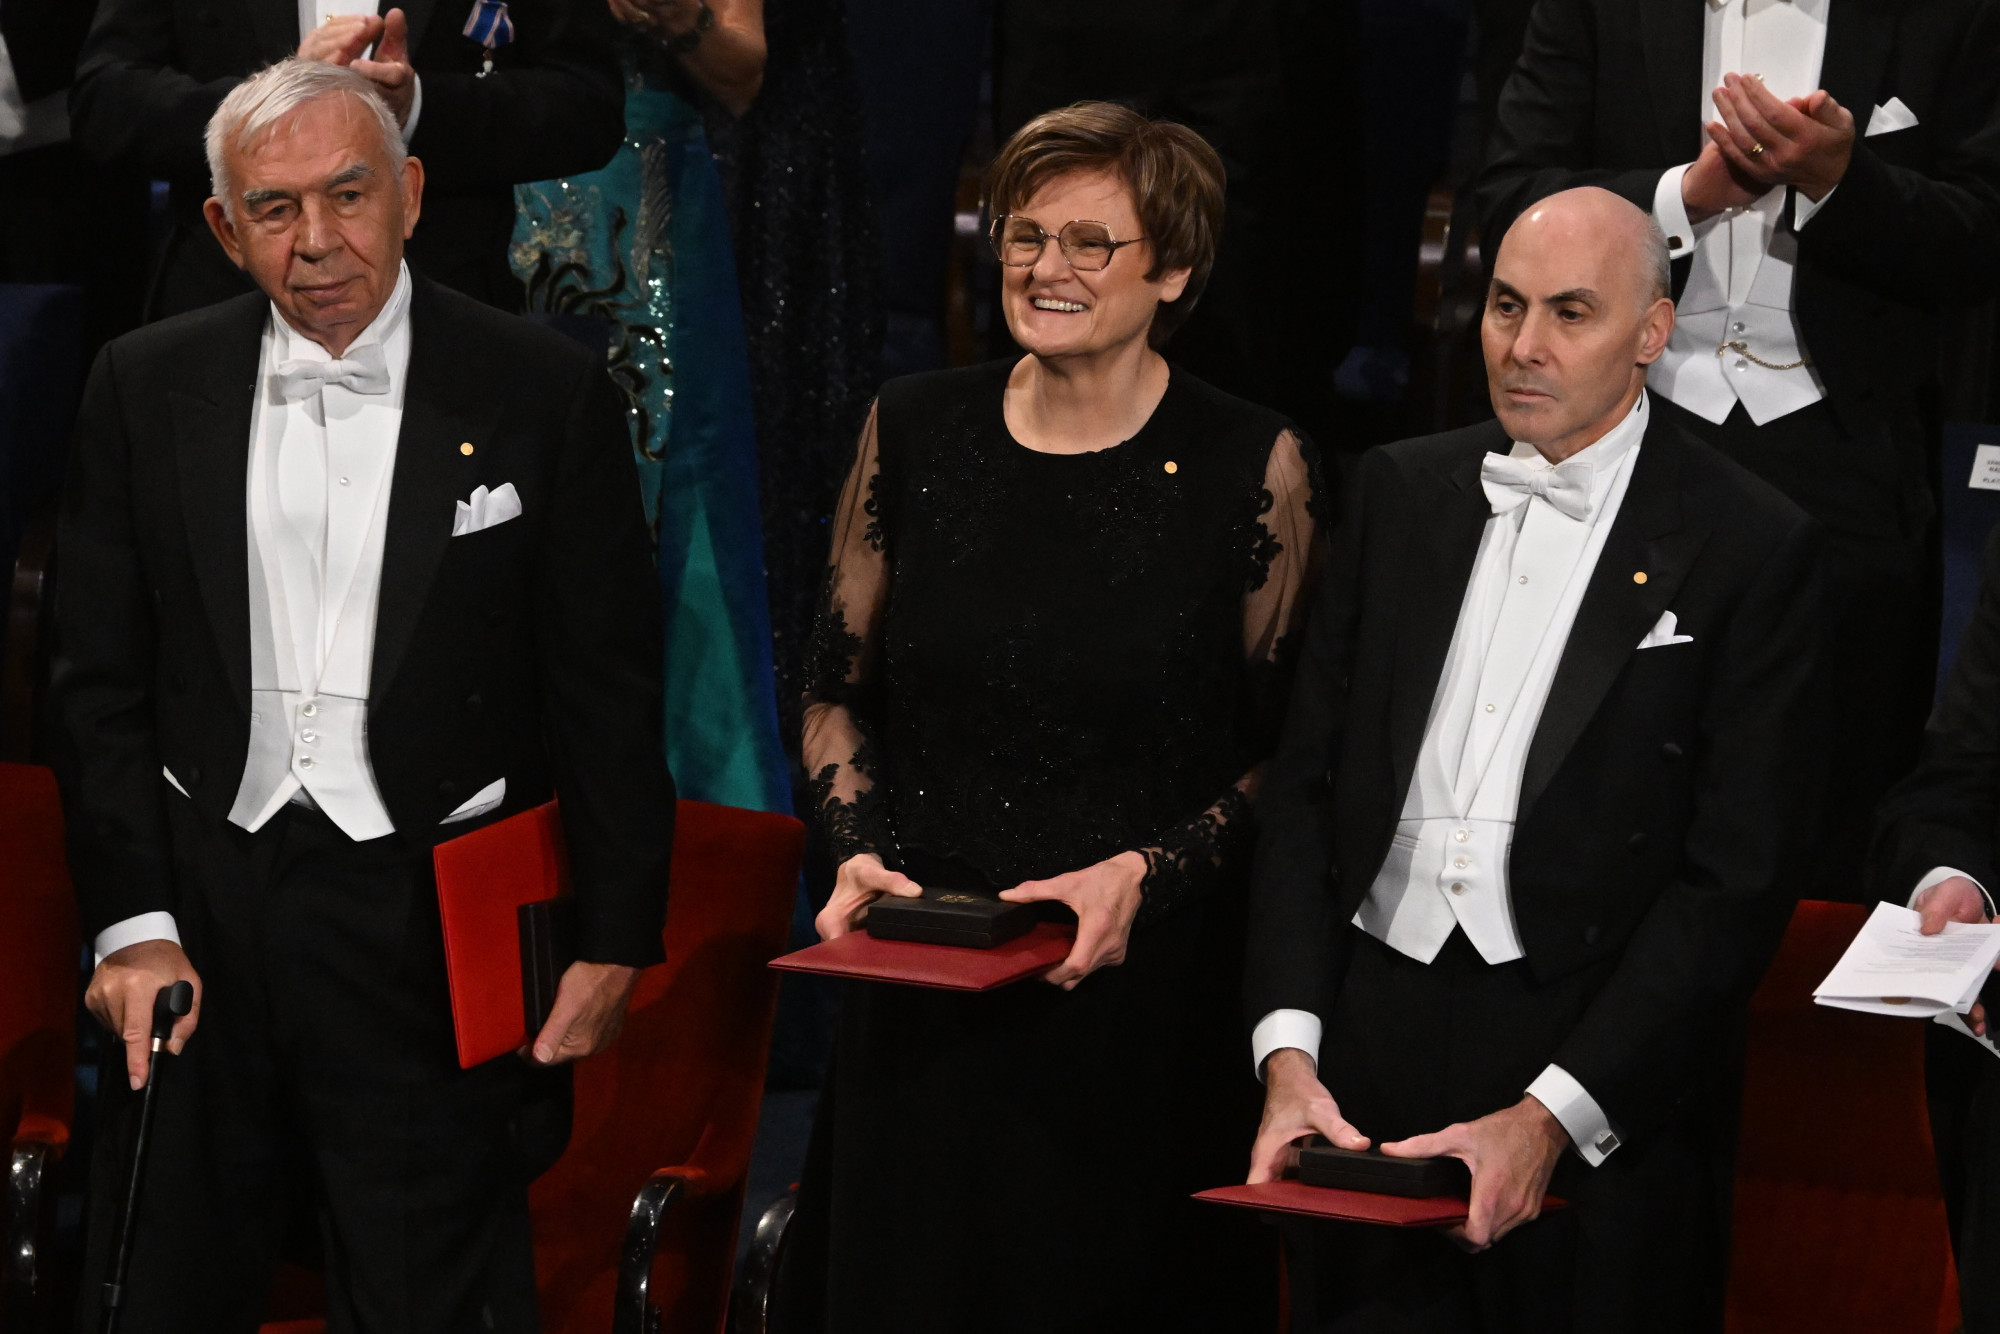 Karikó Katalin és Krausz Ferenc átvette a Nobel-díját